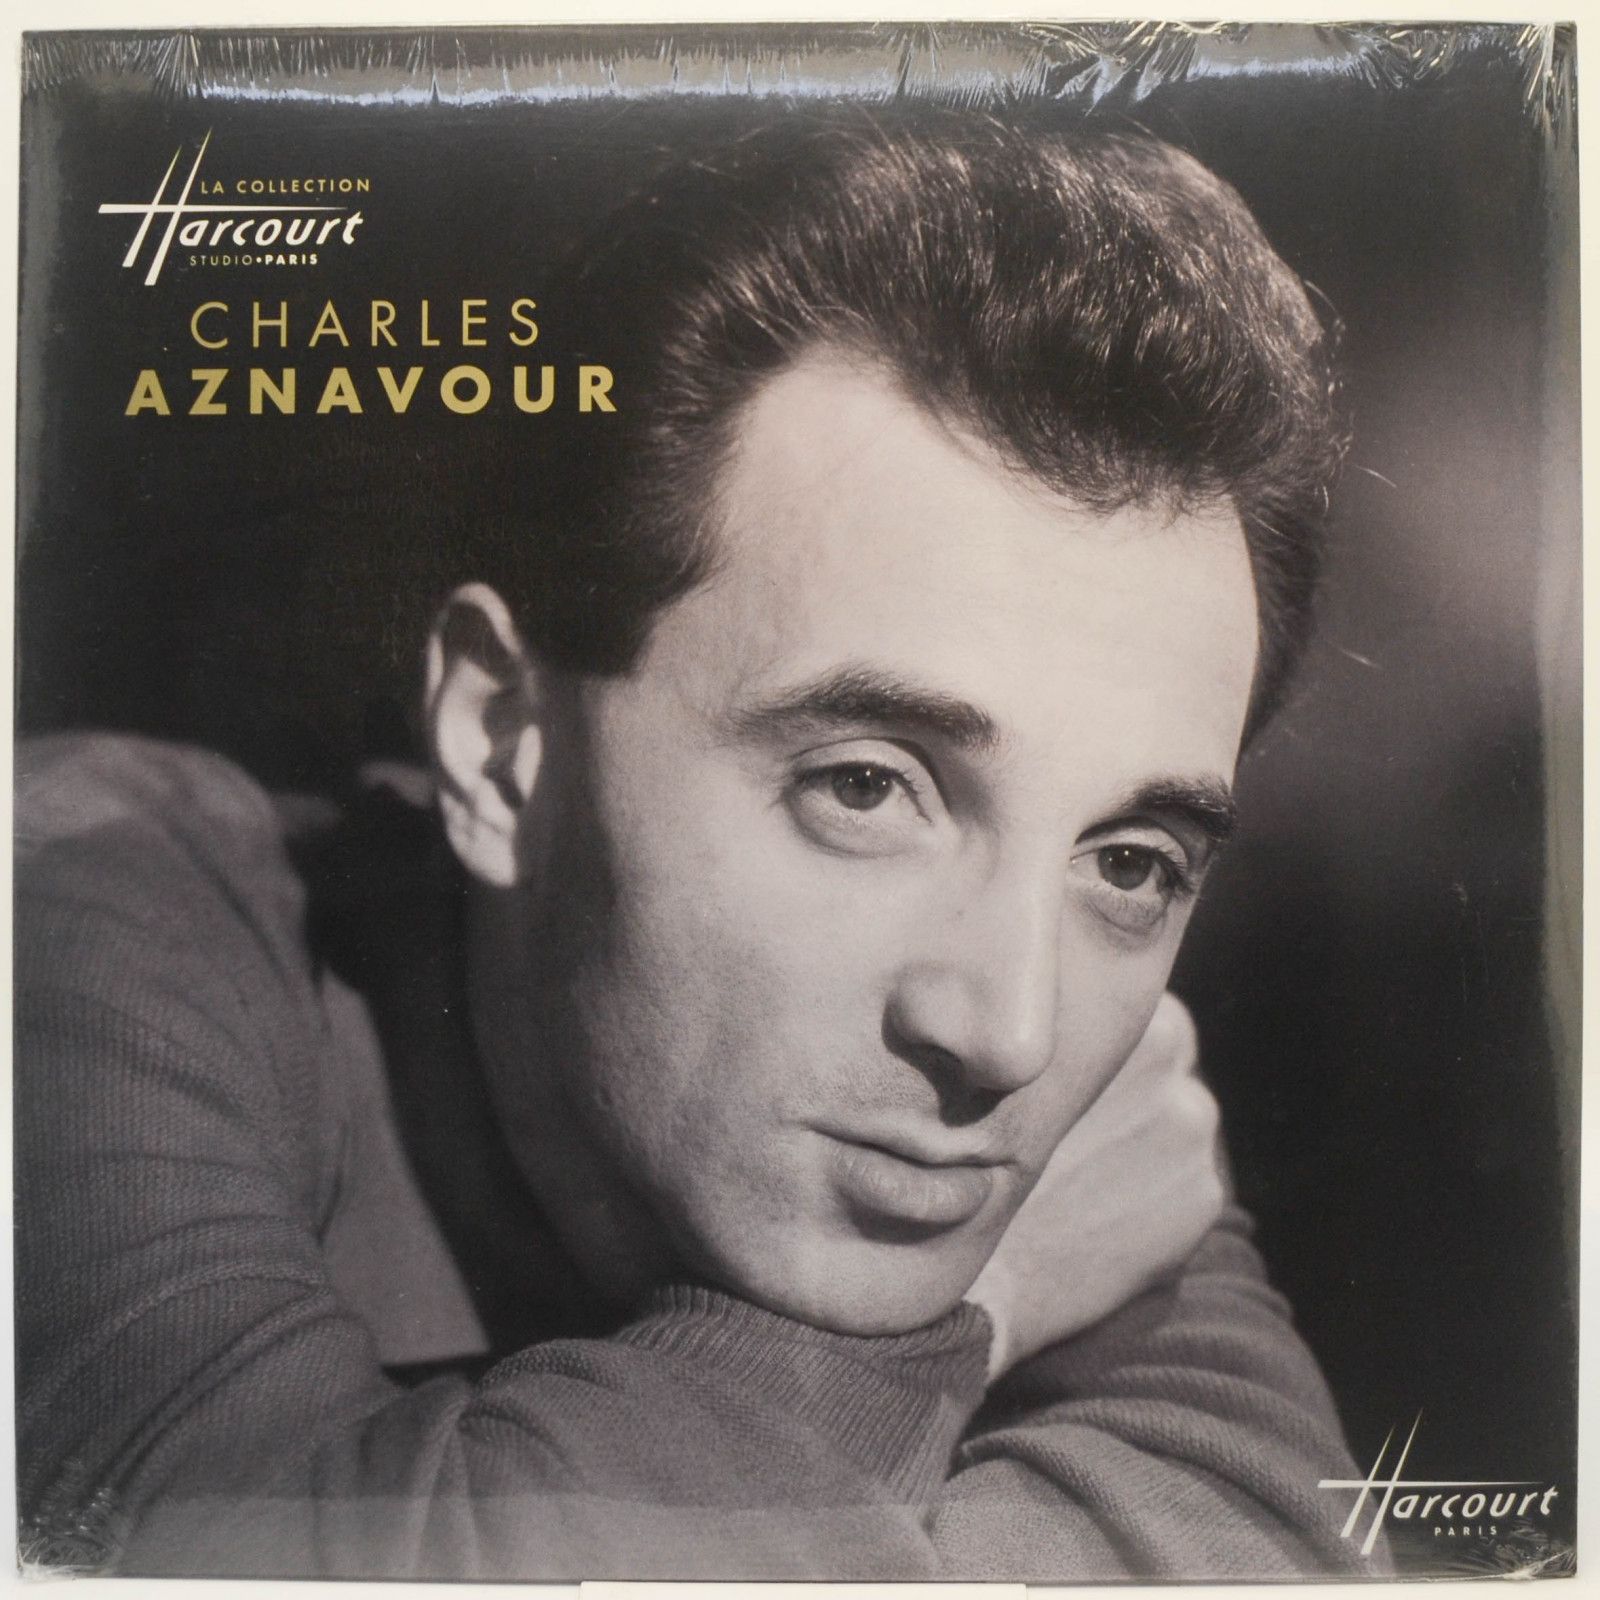 Charles Aznavour — Charles Aznavour (France), 2018